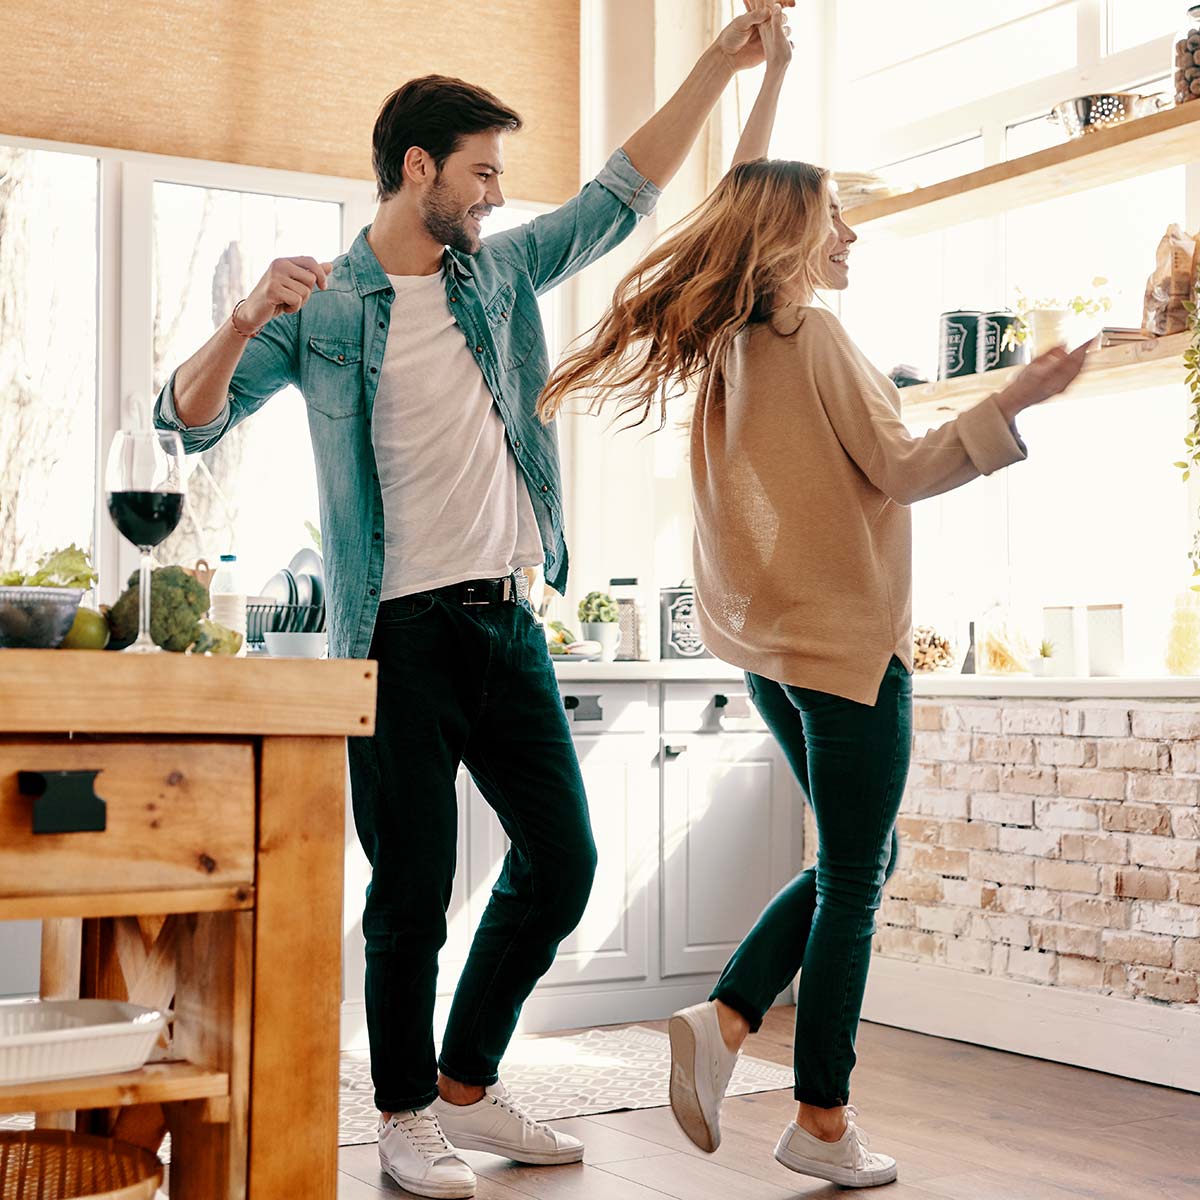 Bailar para ser felices podría ser el método más eficaz para mantenerse como pareja